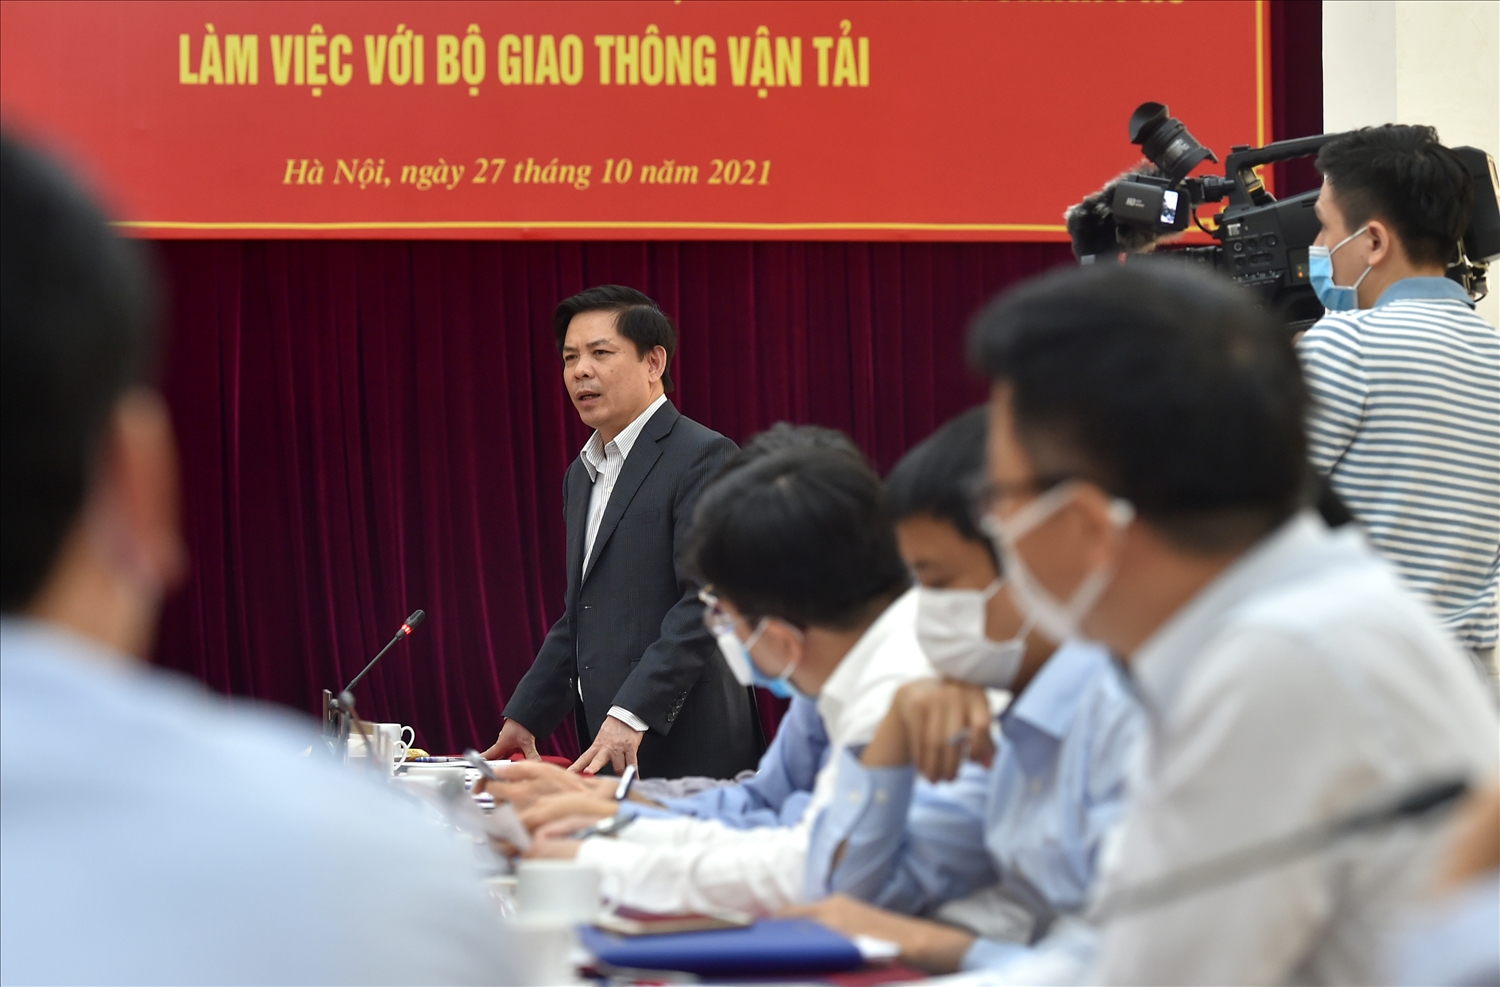 Bộ trưởng Bộ GTVT Nguyễn Văn Thể phát biểu tại cuộc làm việc - Ảnh: VGP/Đức Tuân